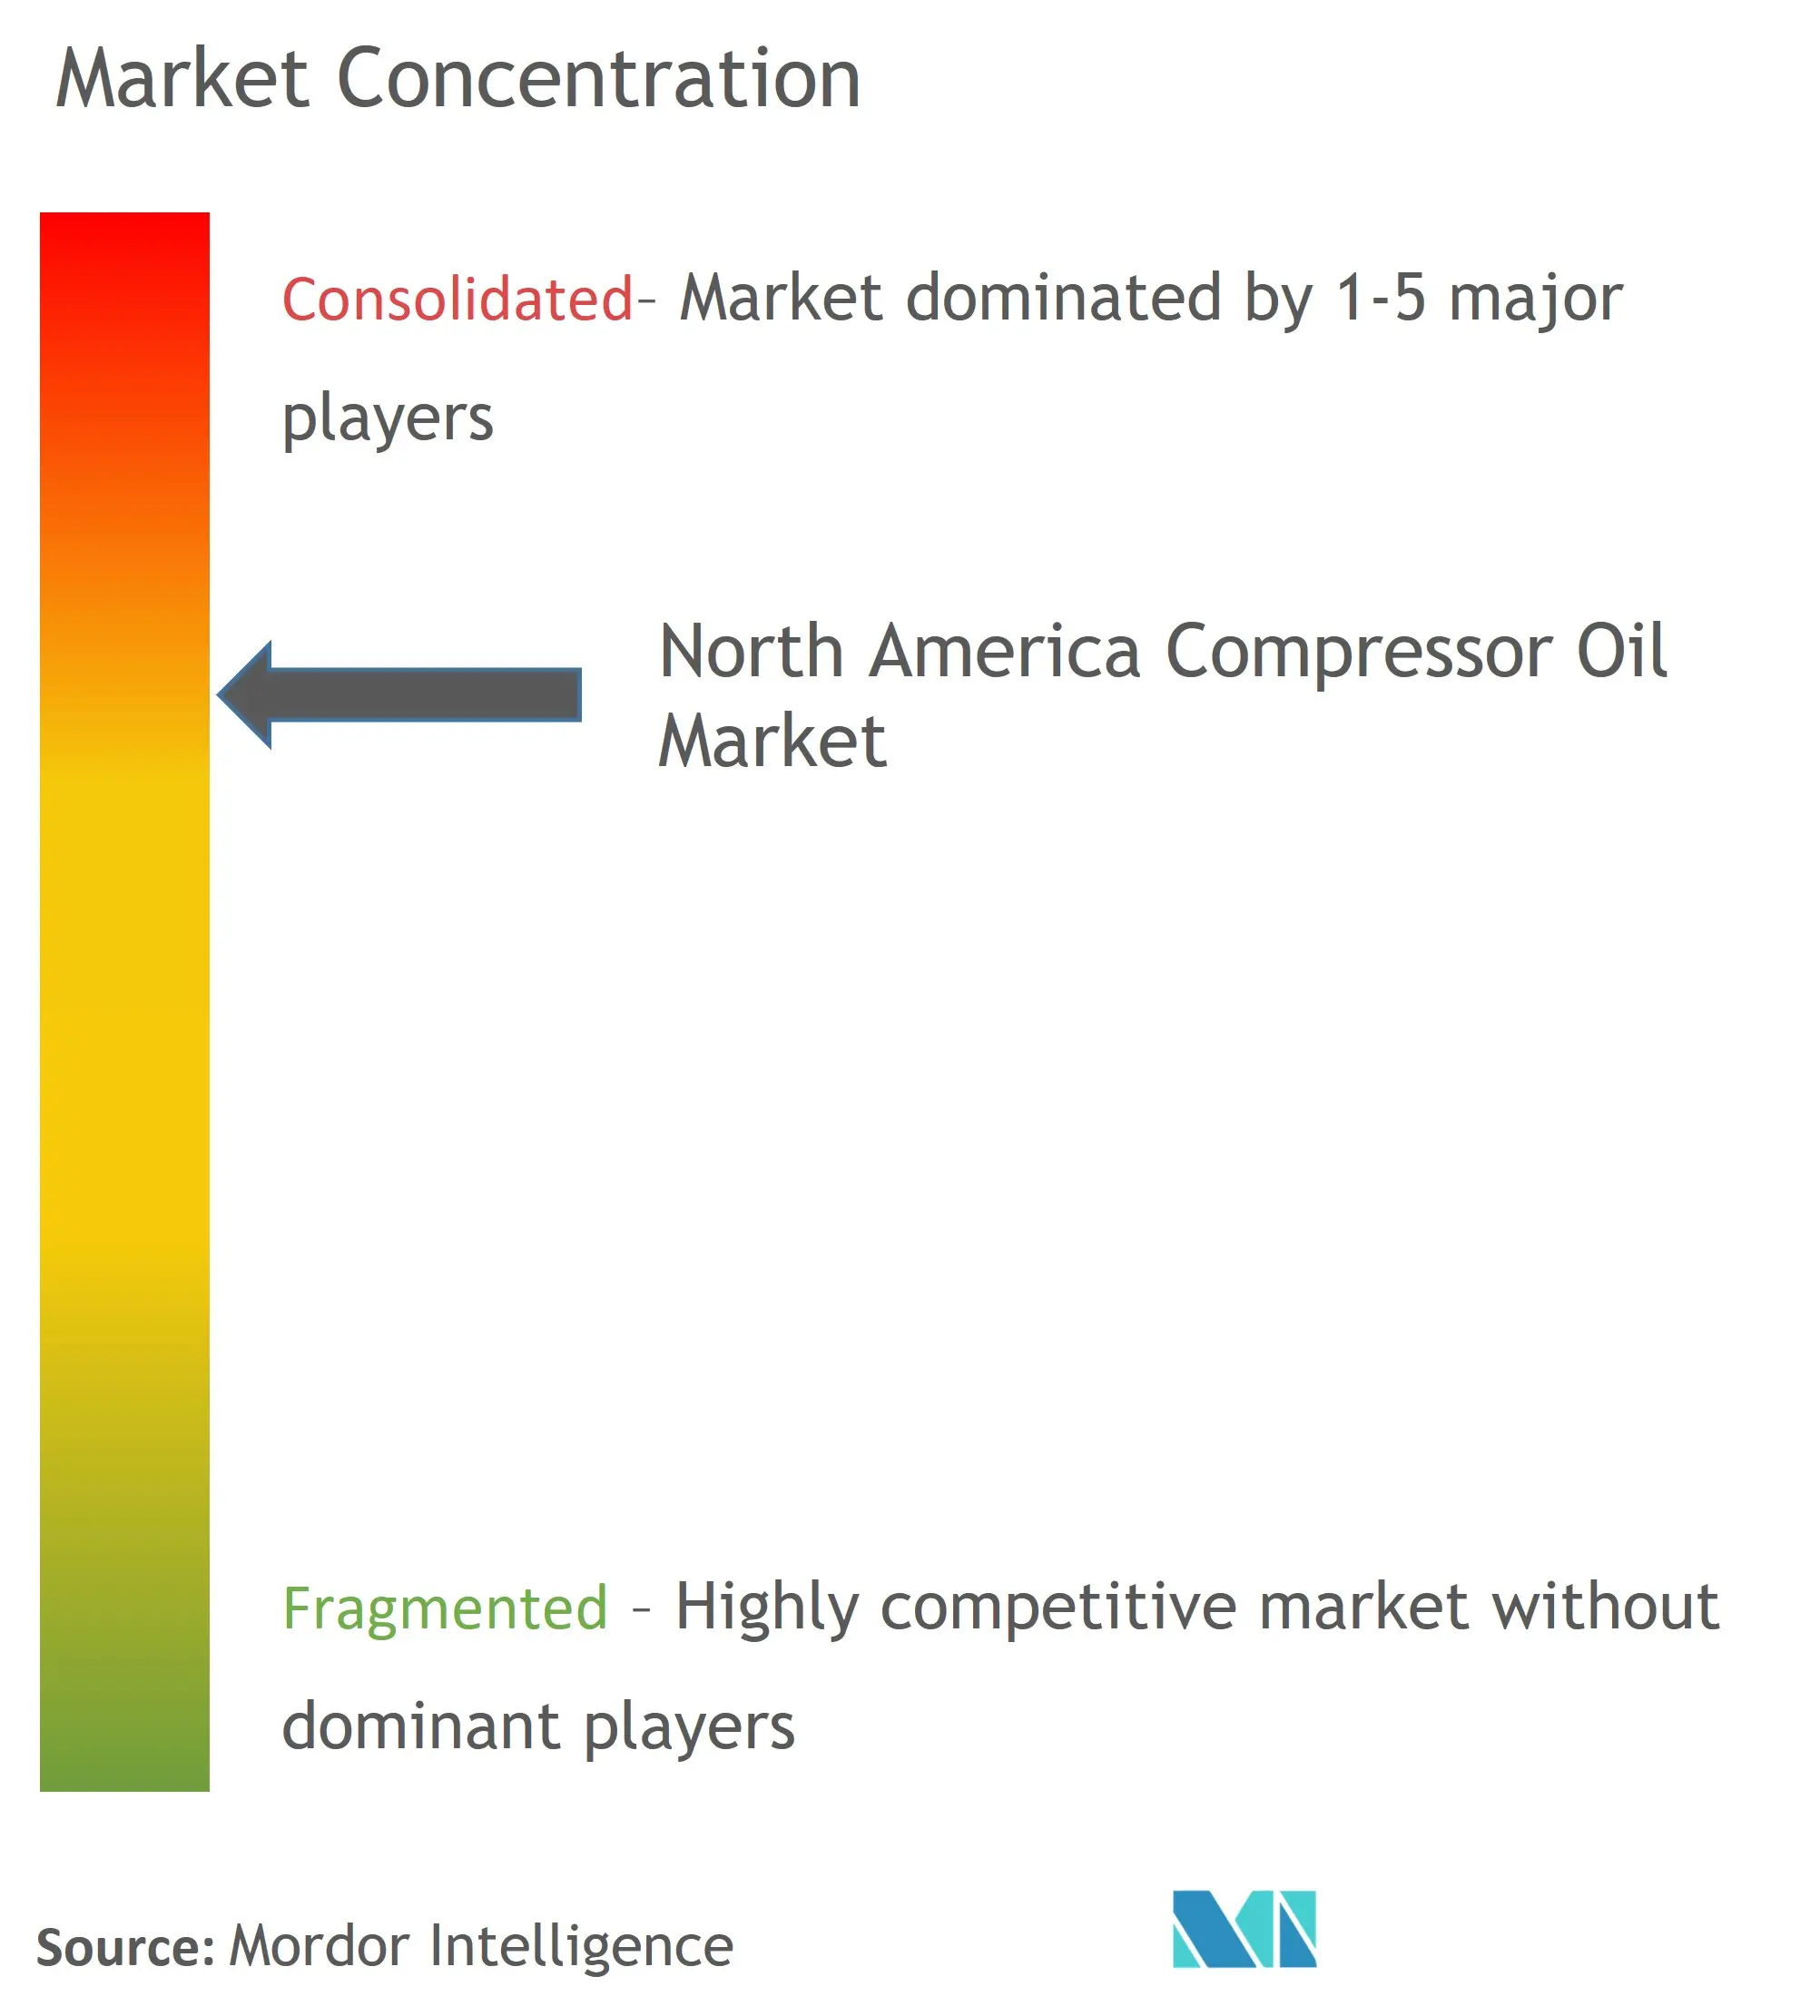 North America Compressor Oil Market Concentration